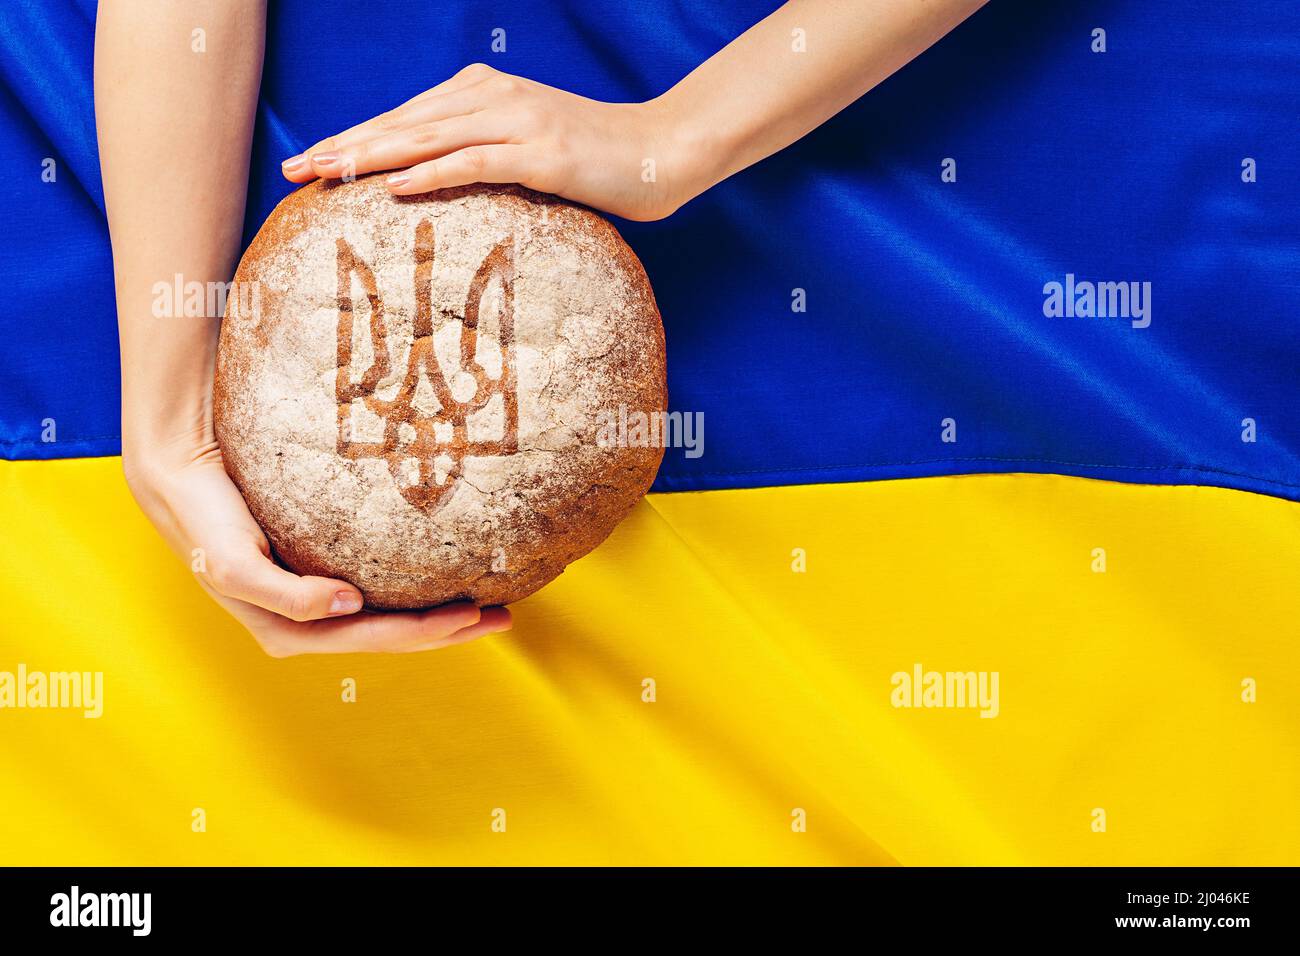 Pane nelle mani della donna con il mantello di armi dell'Ucraina sullo sfondo della bandiera Ucraina Foto Stock